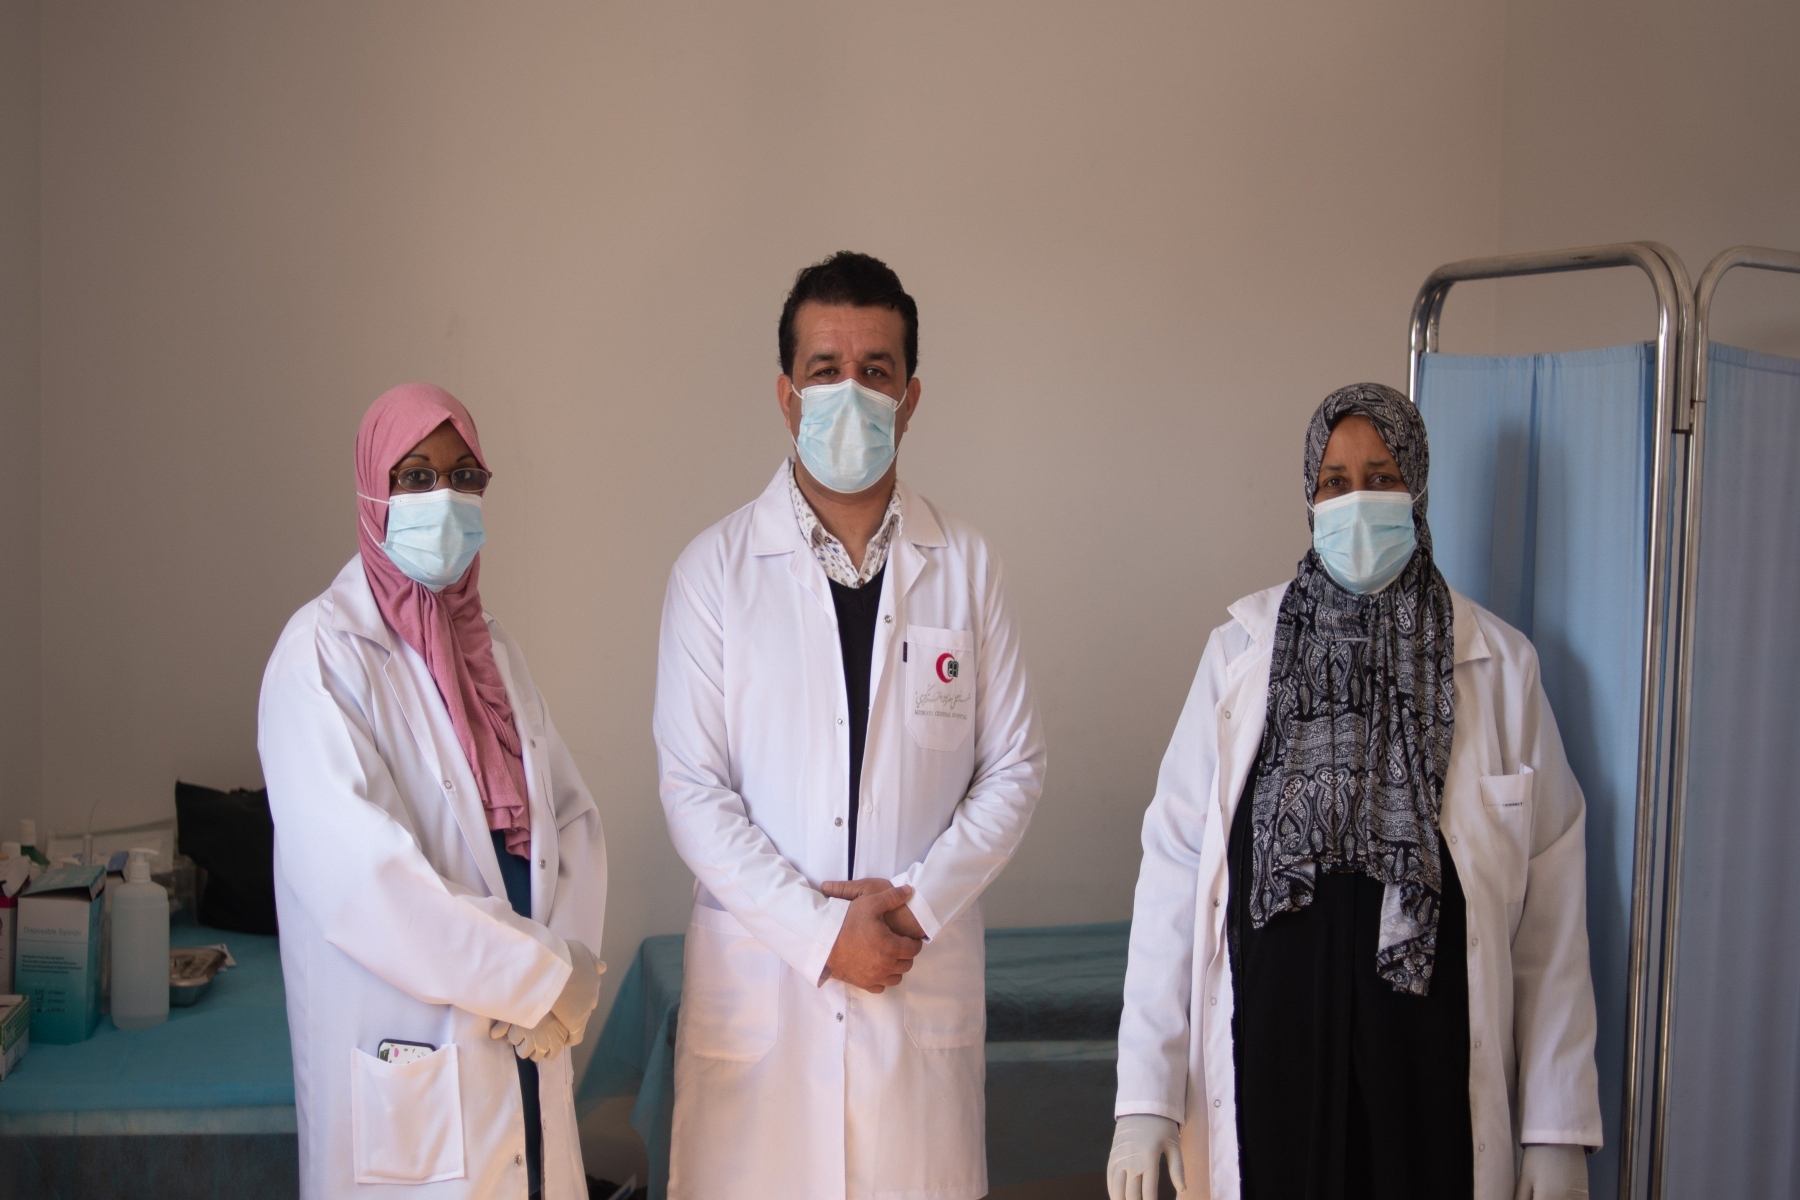 ΠΟΥ μετανάστες: Με αφορμή την Παγκόσμια Ημέρα Μεταναστών ο ΠΟΥ δημοσιεύει νέα πρότυπα υπηρεσιών υγείας στους πρόσφυγες